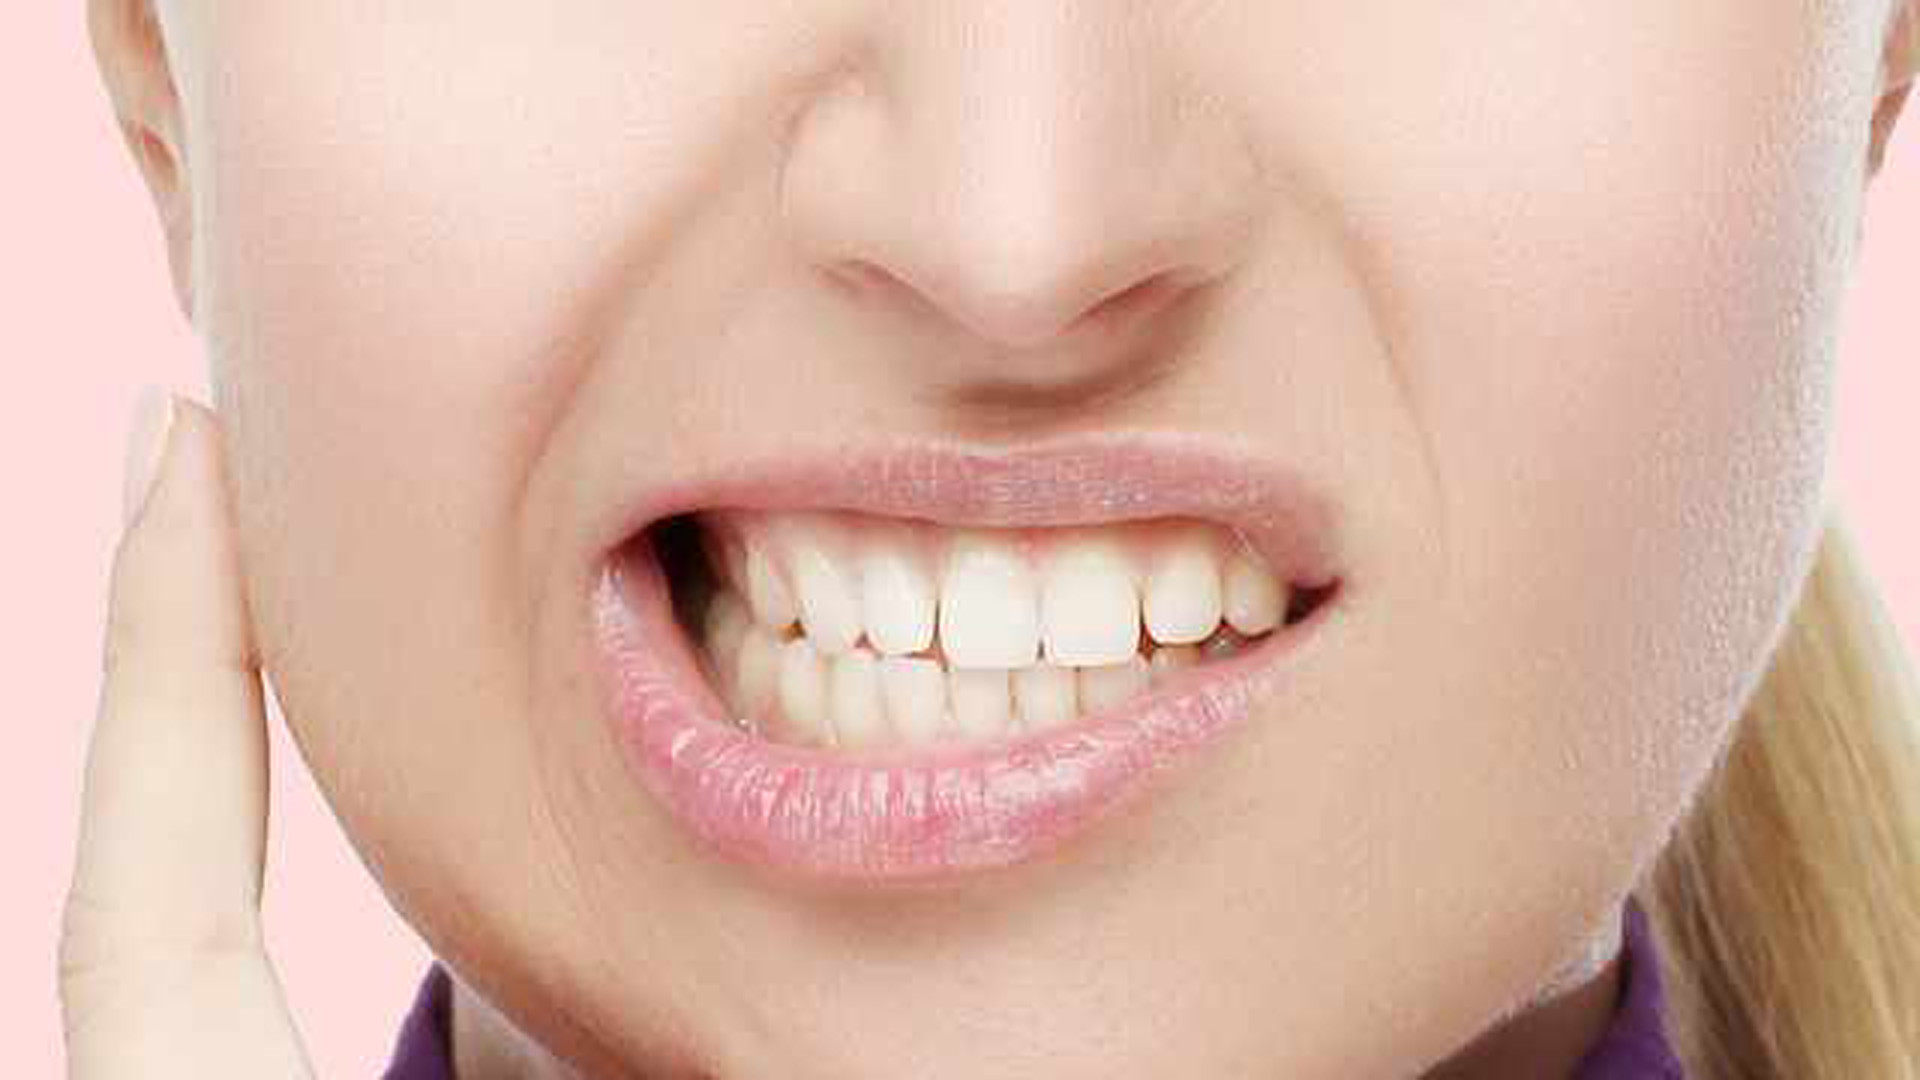 Conocé las novedades odontológicas explicadas por profesionales de la salud bucal imagen-4